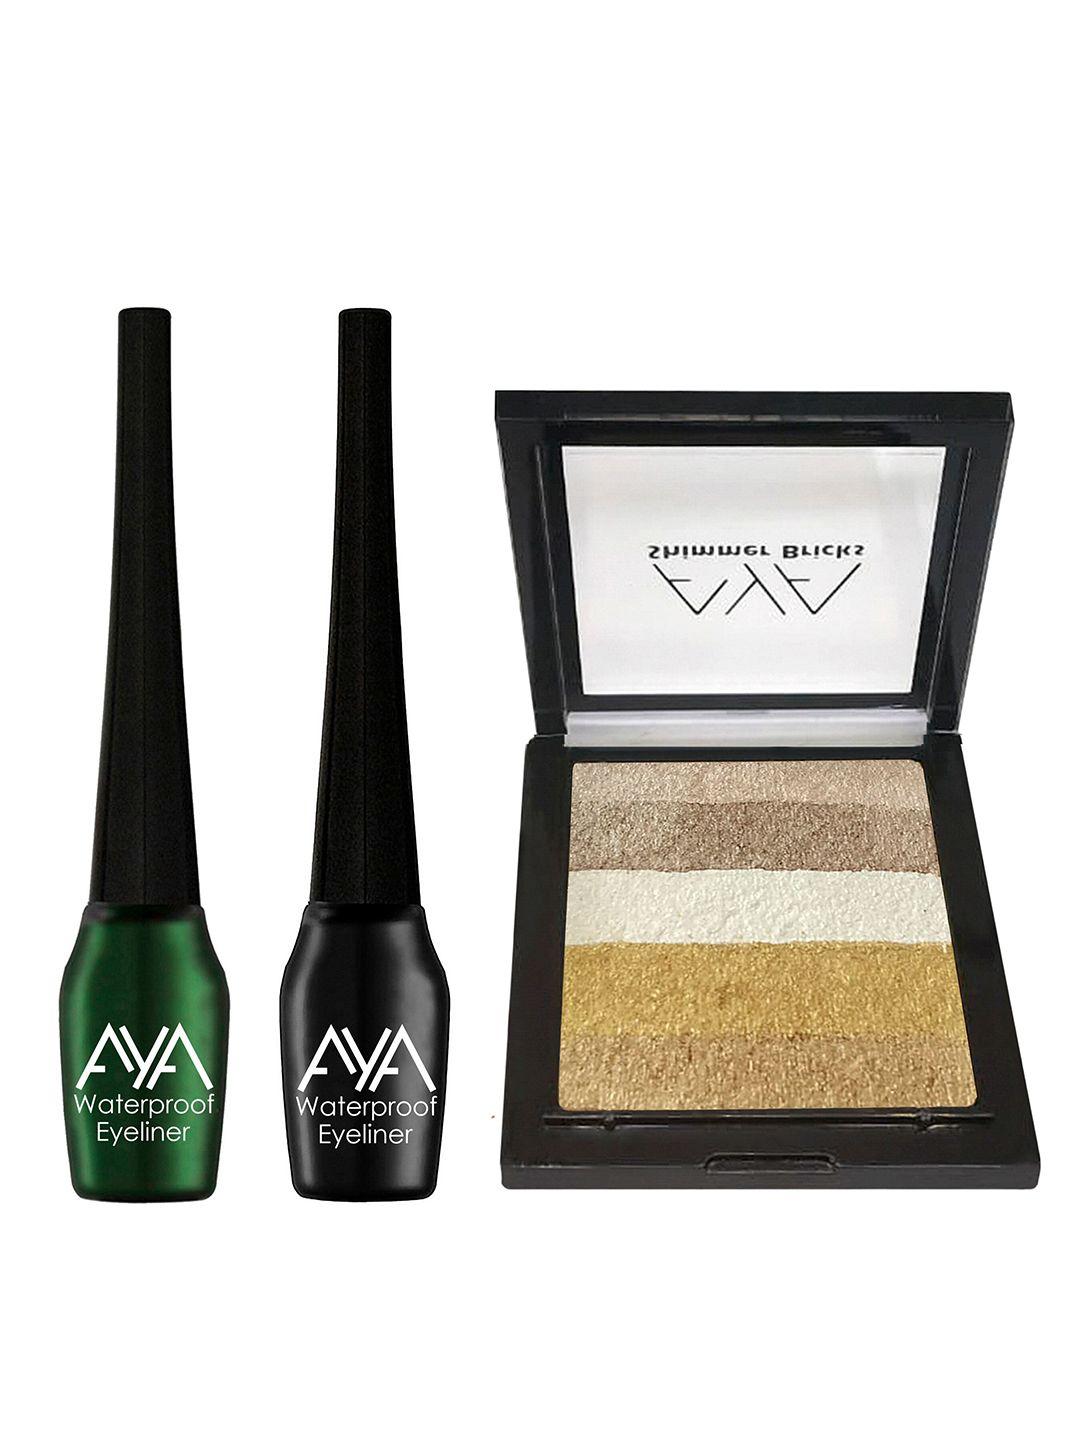 aya eyeliner & shimmer brick highlighter makeup gift set